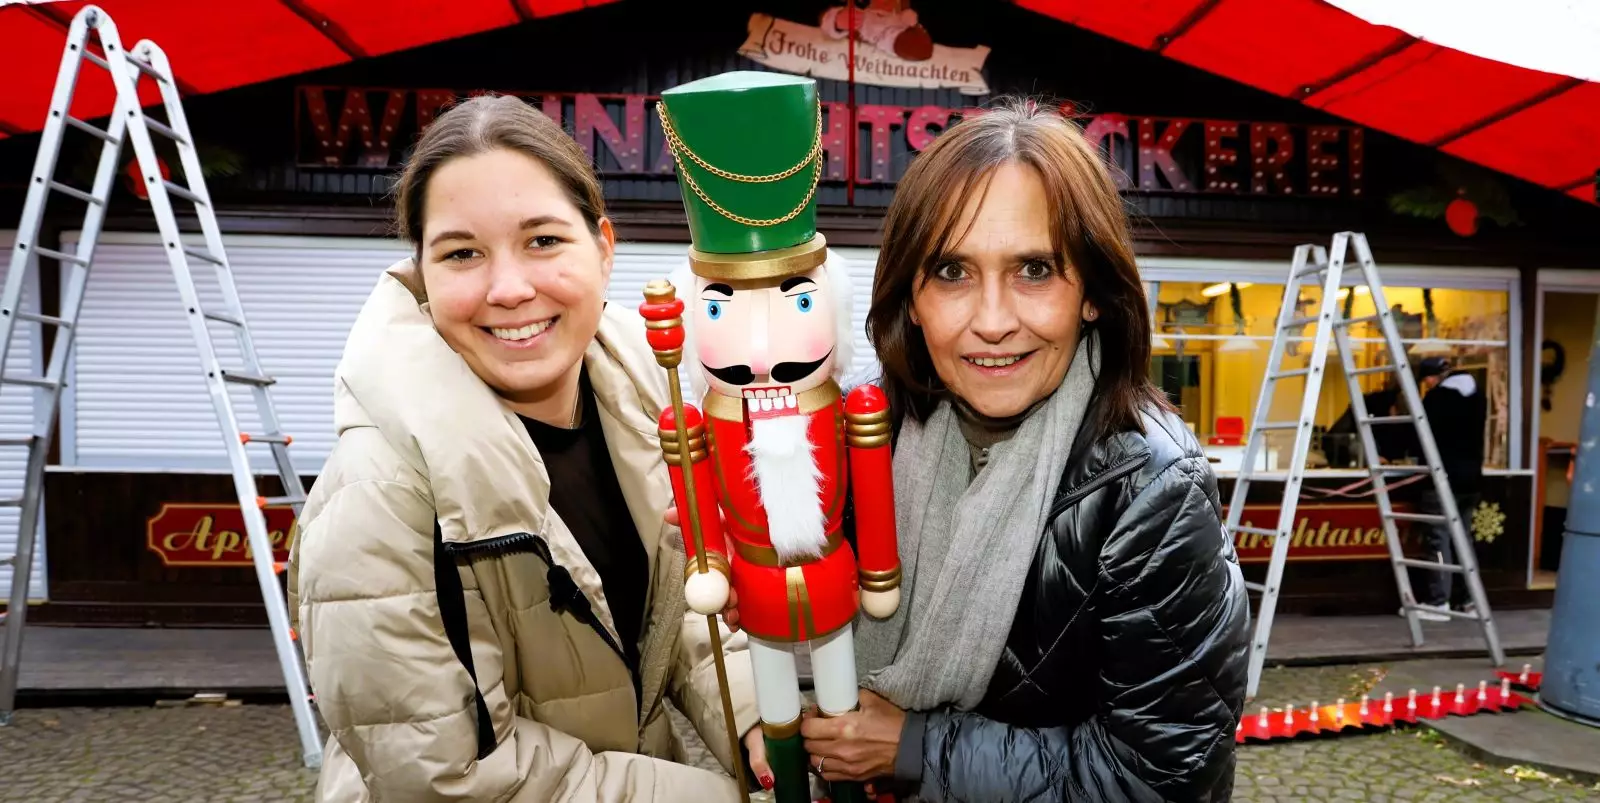 Louisa Knipschild vom Harburg Marketing (links) und Anne Rehberg freuen sich auf den Harburger Weihnachtsmarkt. Foto: Christian Bittcher